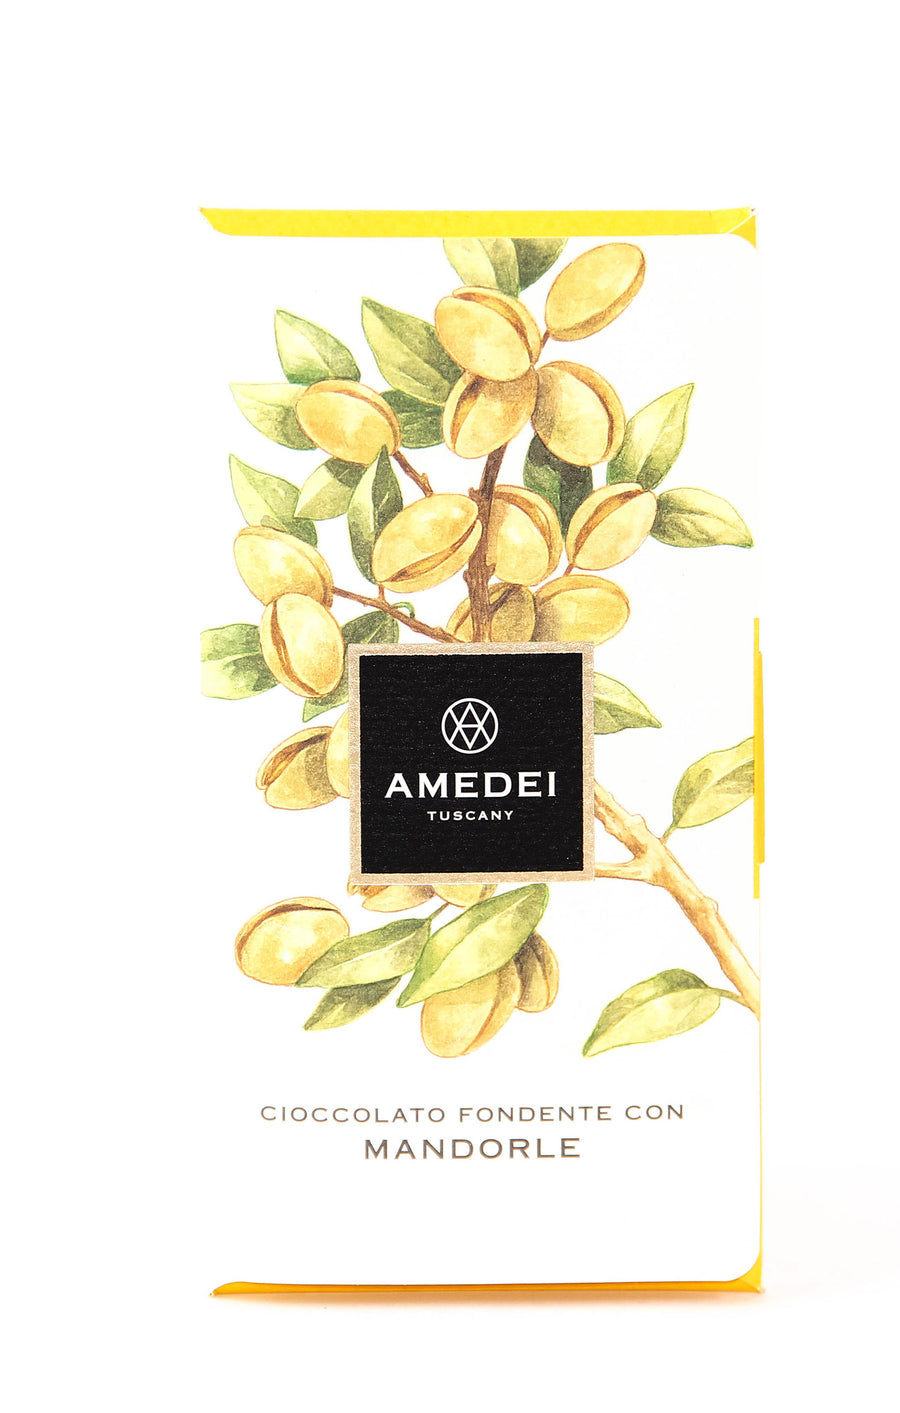 Amedei Mandorle 63% Dark Chocolate with Almonds